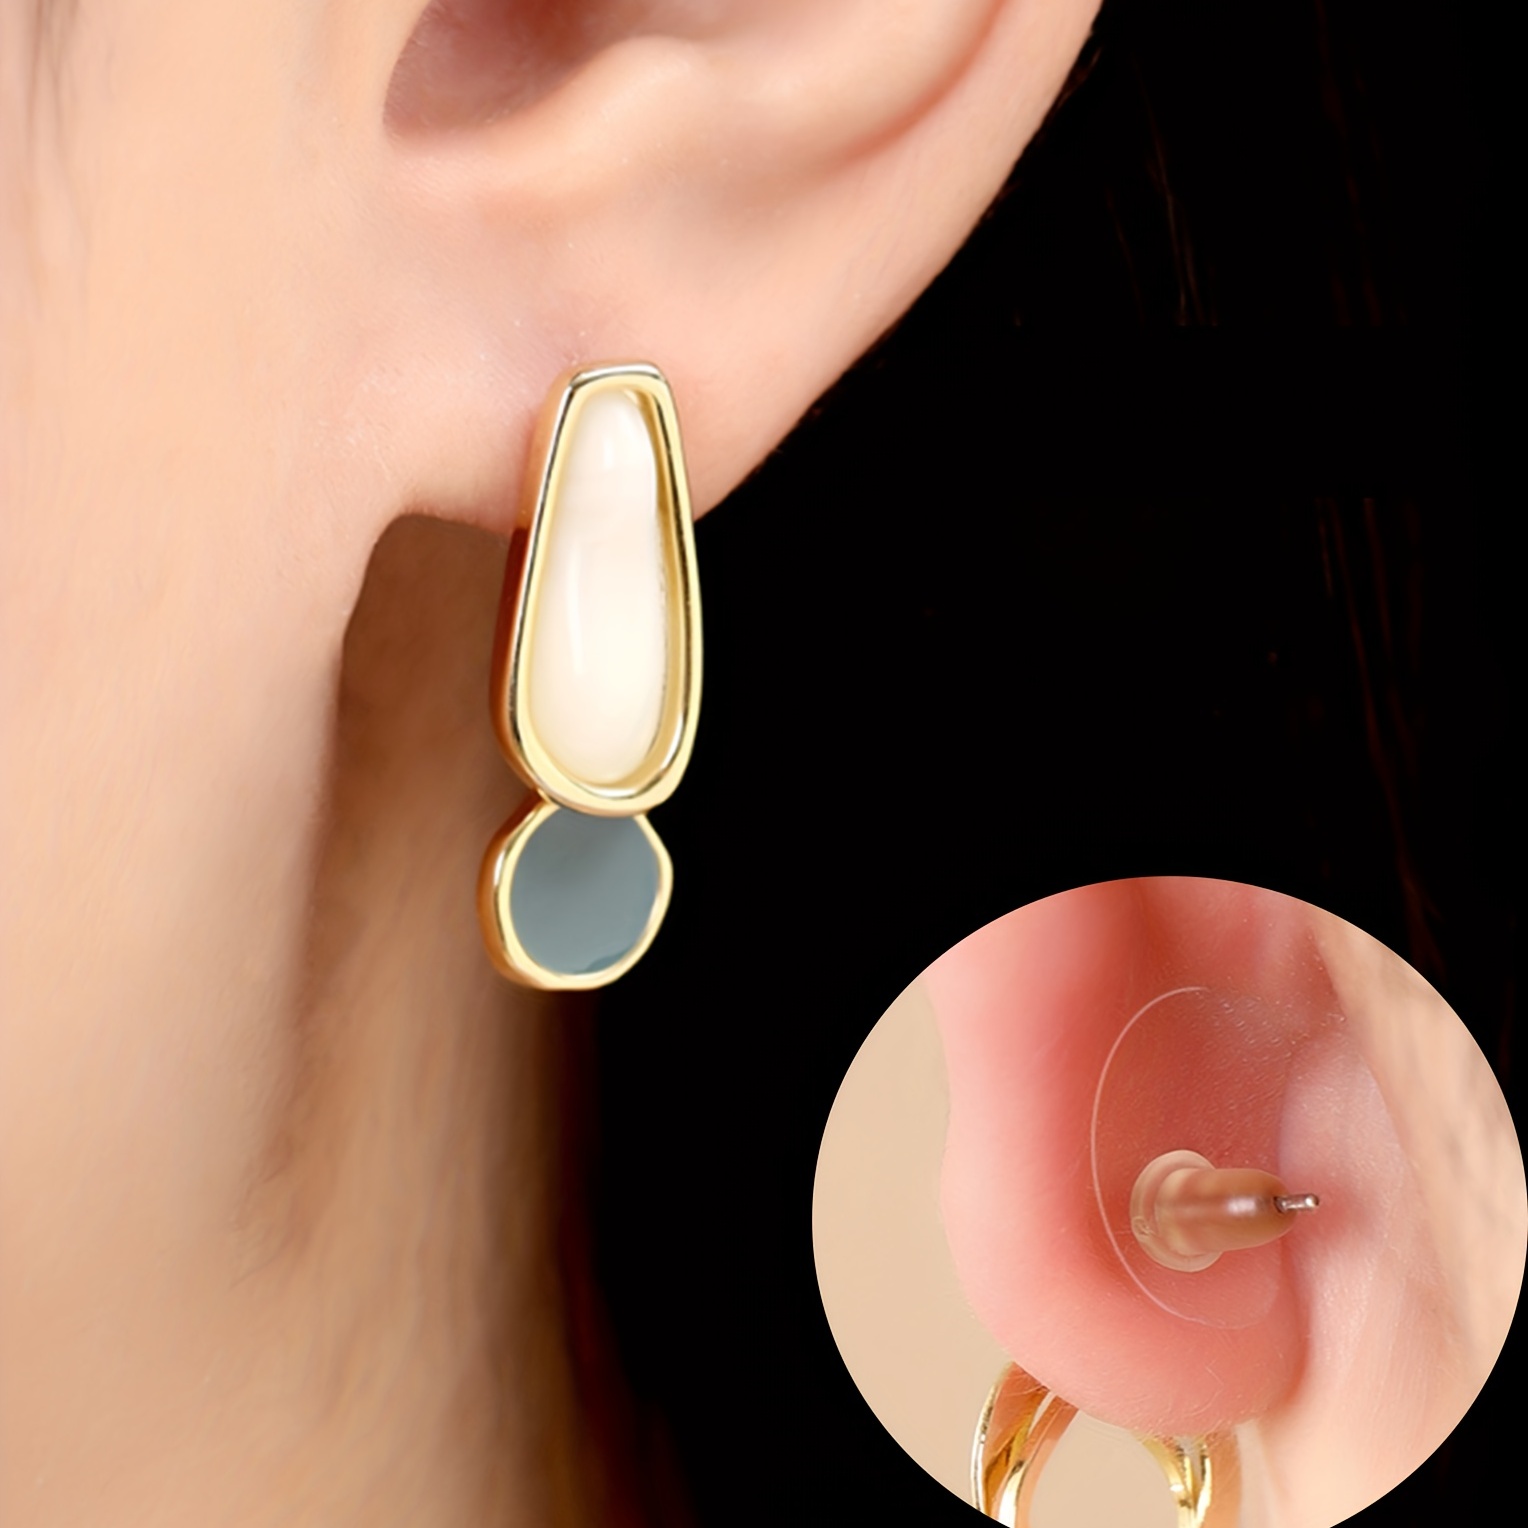 Buy INSIME Ear lobe support for earrings, Ear stickers for heavy earrings, Invisible Earlobe supporter heavy earring, Ear lock supporting patches